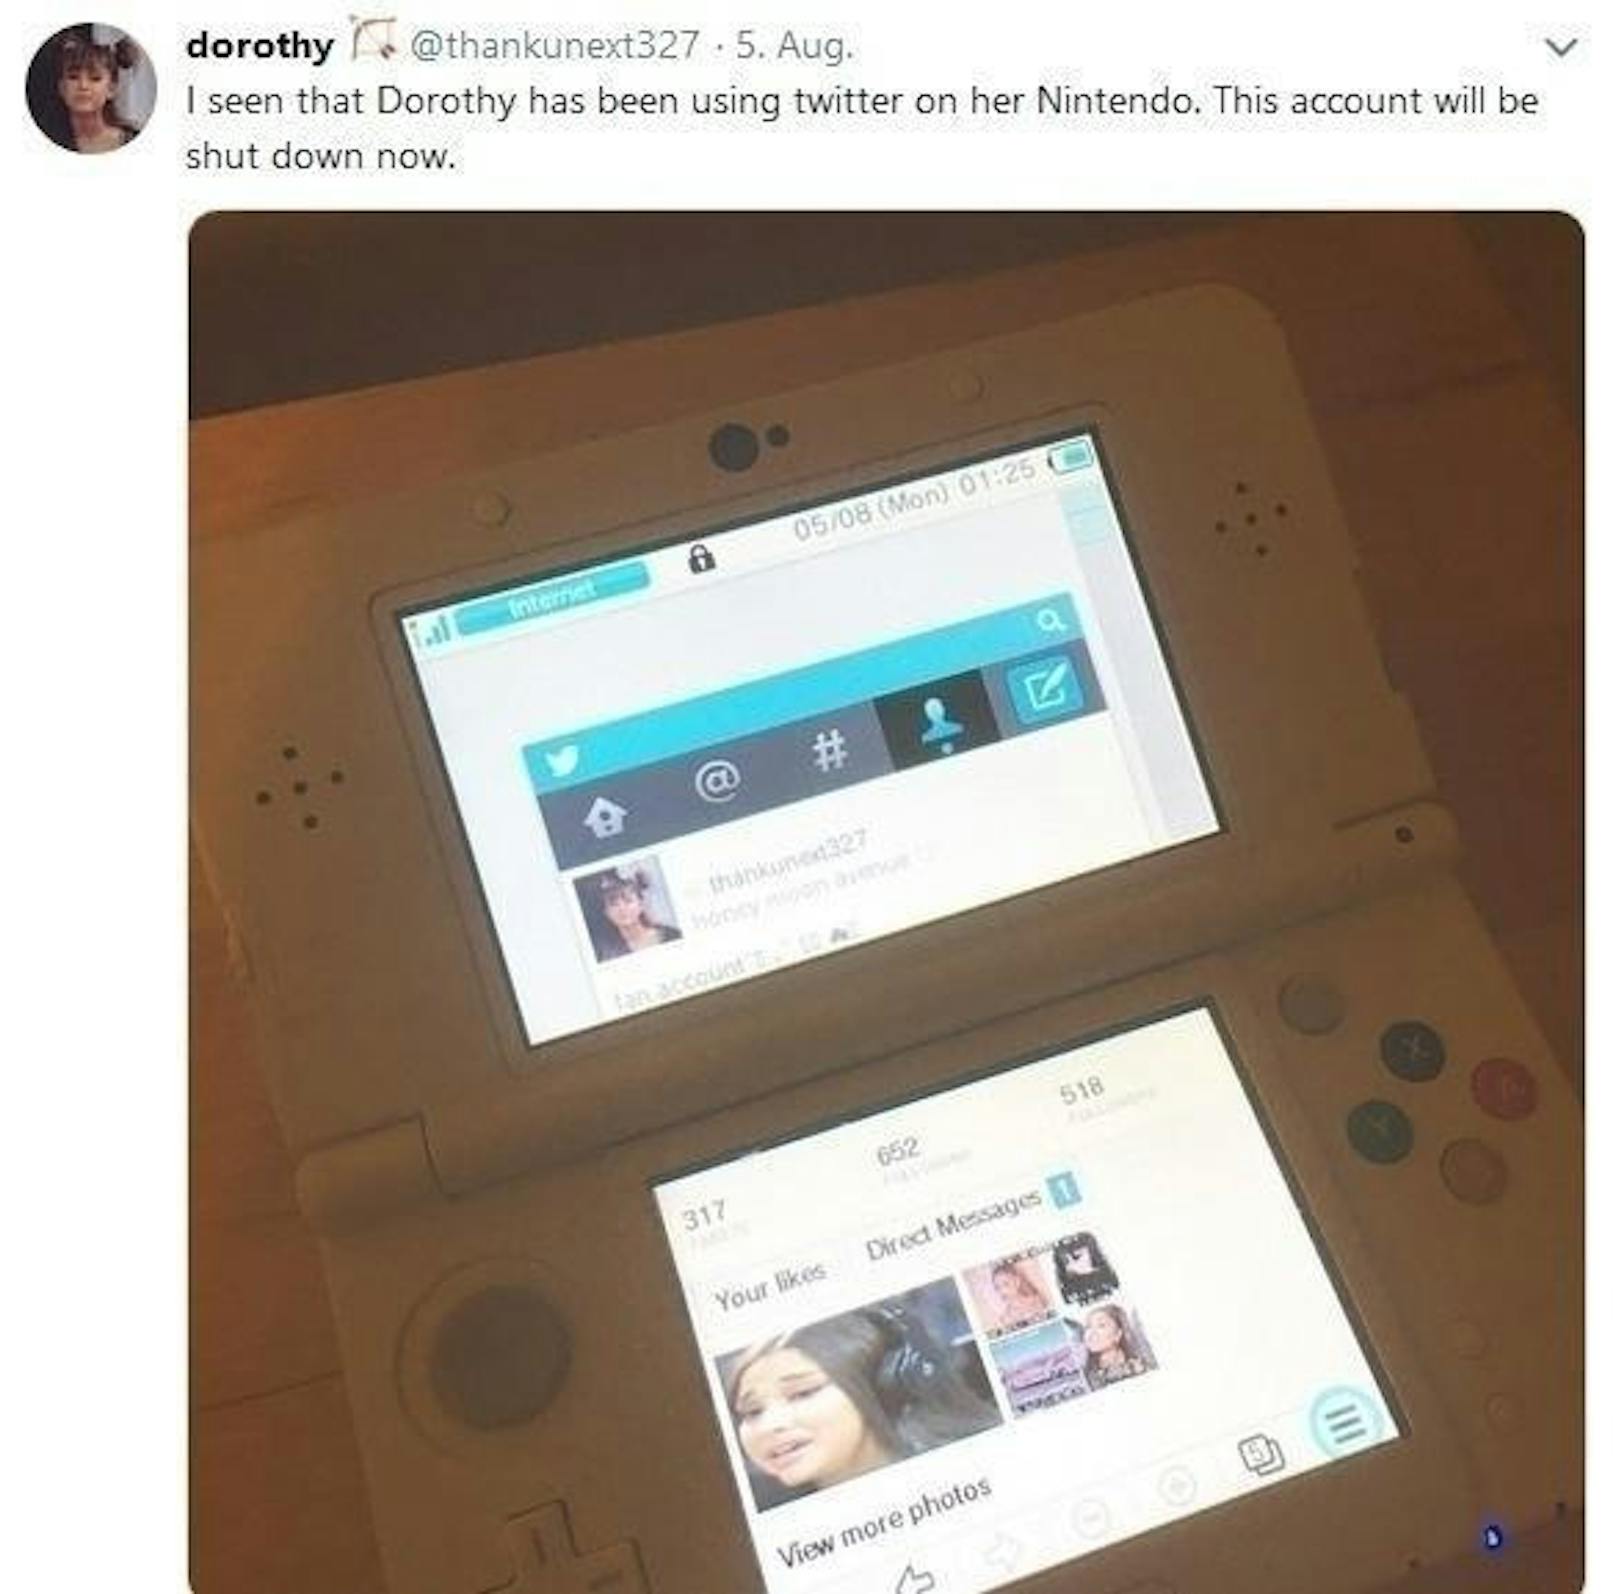 Doch die Mutter kam dahinter und verbot auch die Nutzung dieser Geräte: "Ich habe gesehen, dass Dorothy Twitter auf ihrer Nintendo-Konsole genutzt hat. Das Konto wird nun deaktiviert."